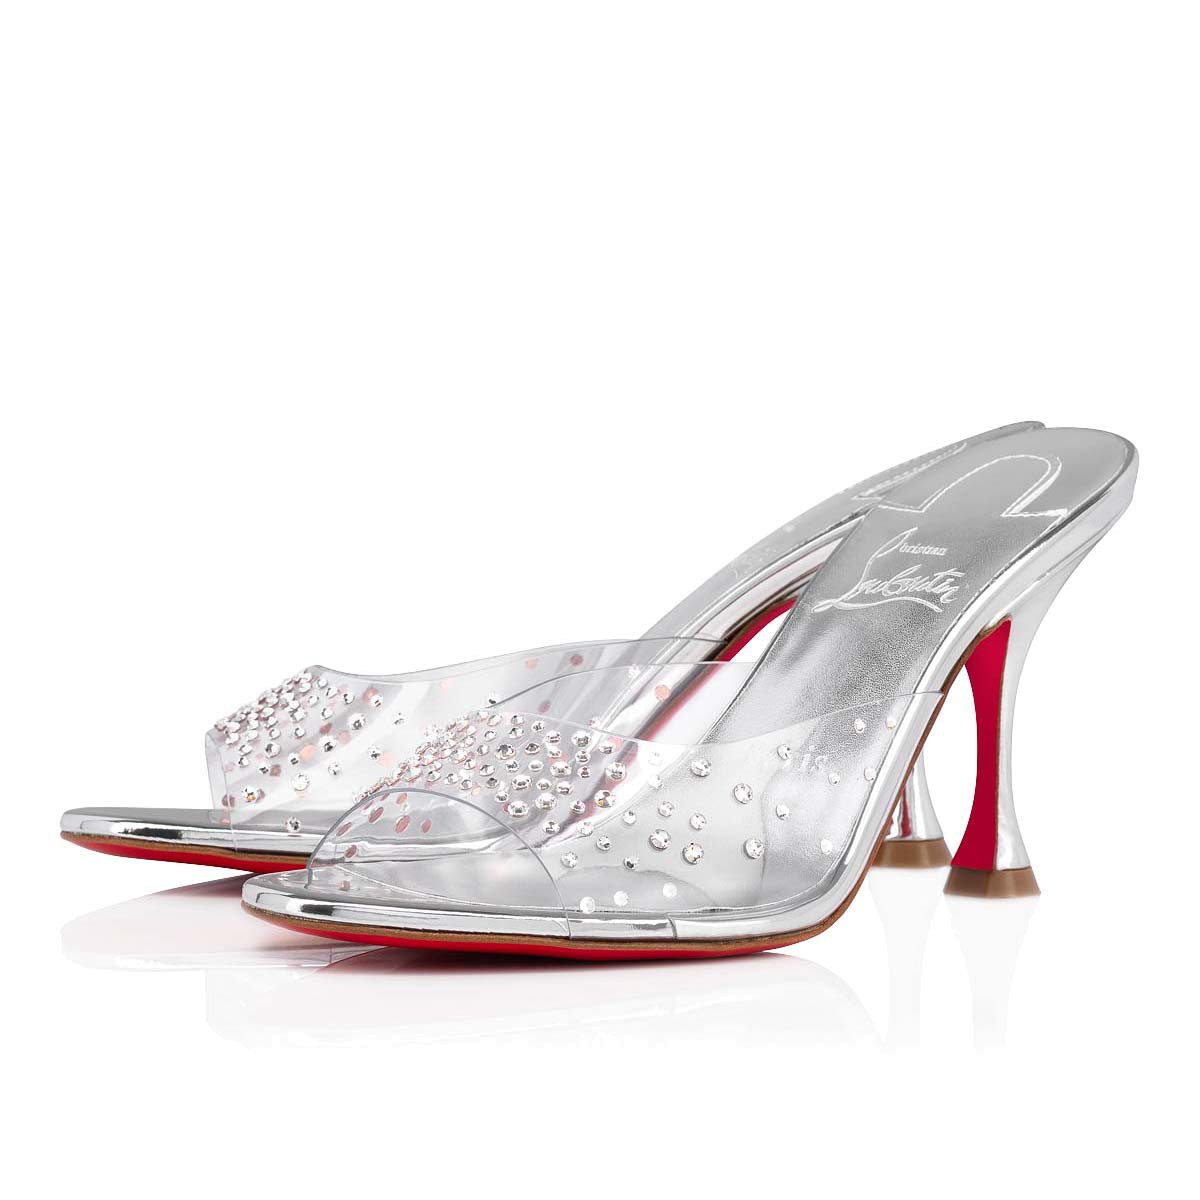 Degramule Strass 85 Silver PVC - Women Shoes - Christian Louboutin